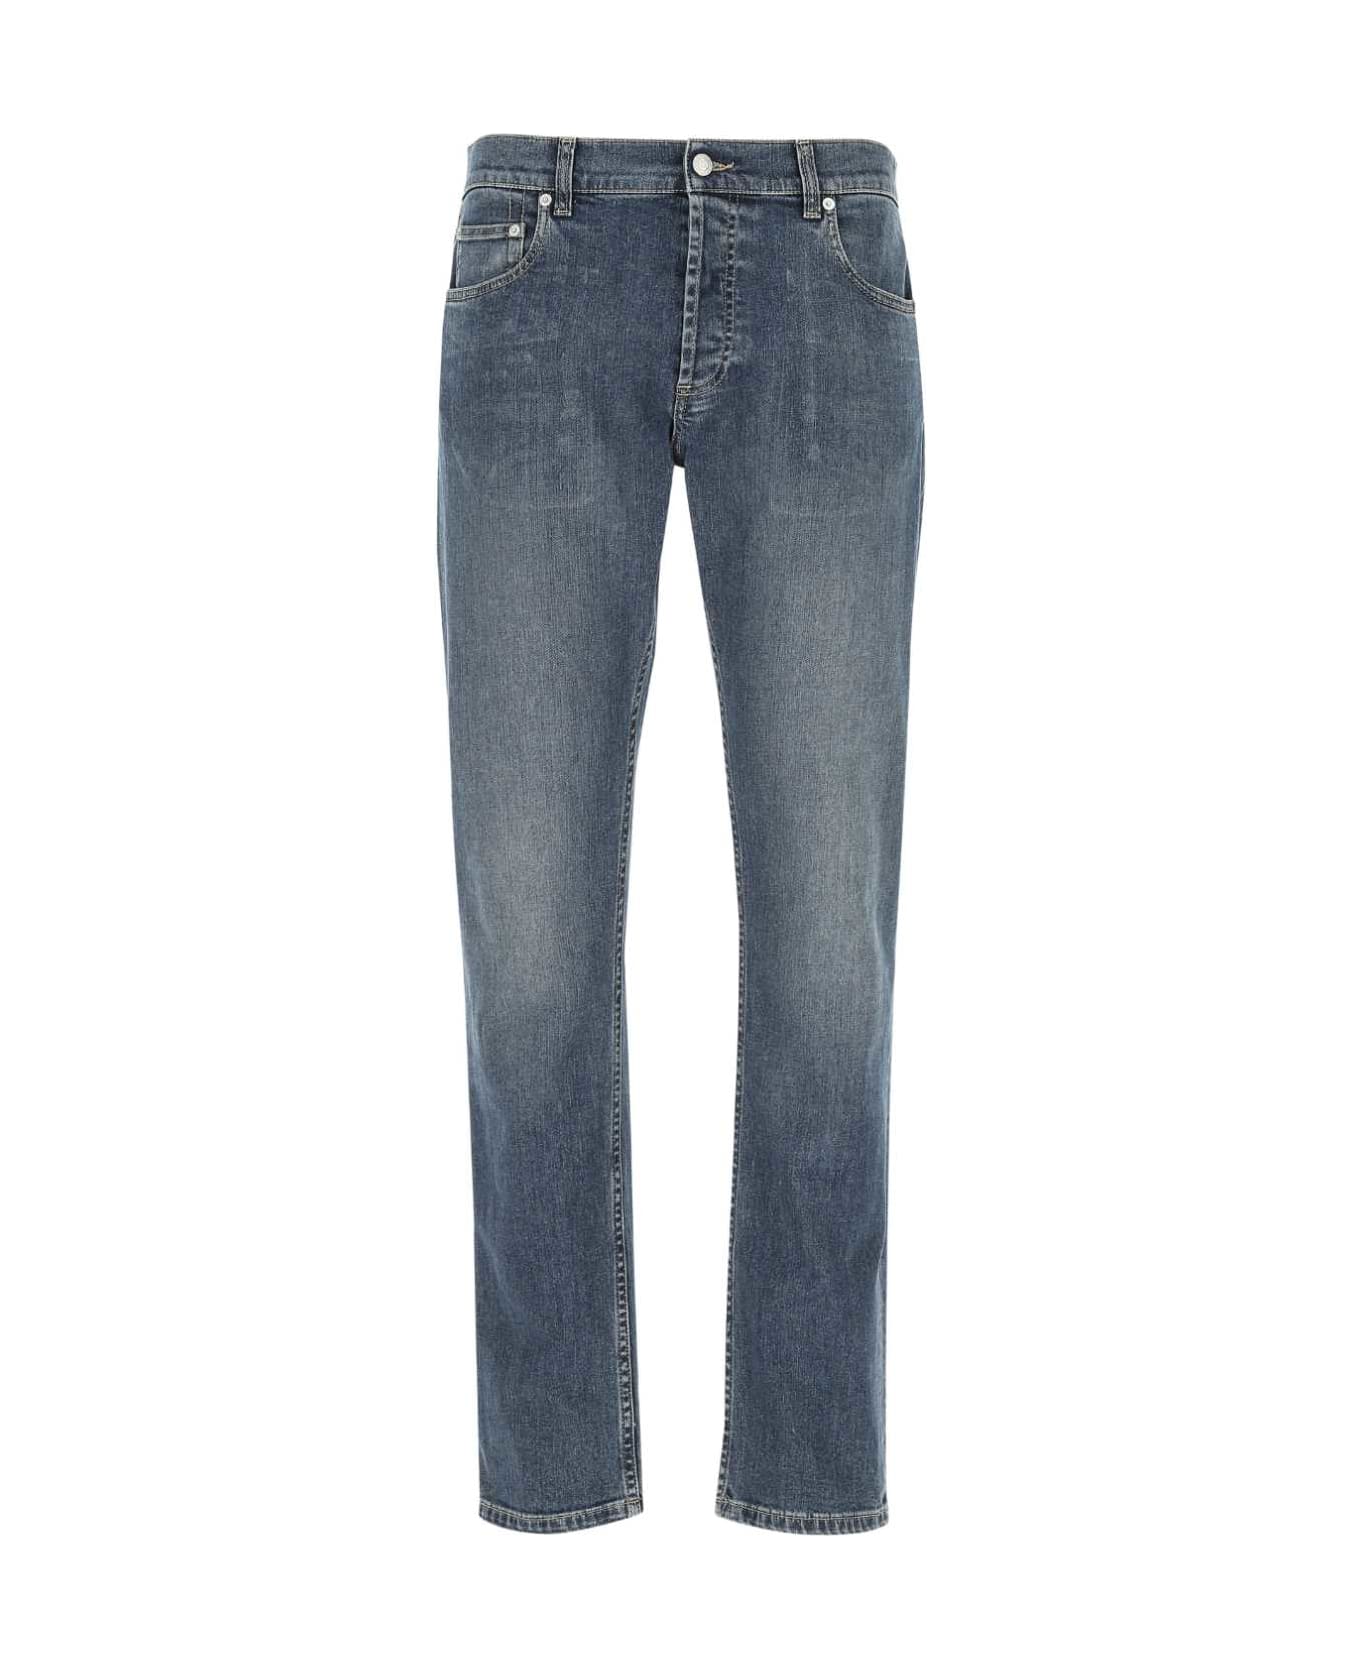 Alexander McQueen Stretch Denim Jeans - 4001 デニム